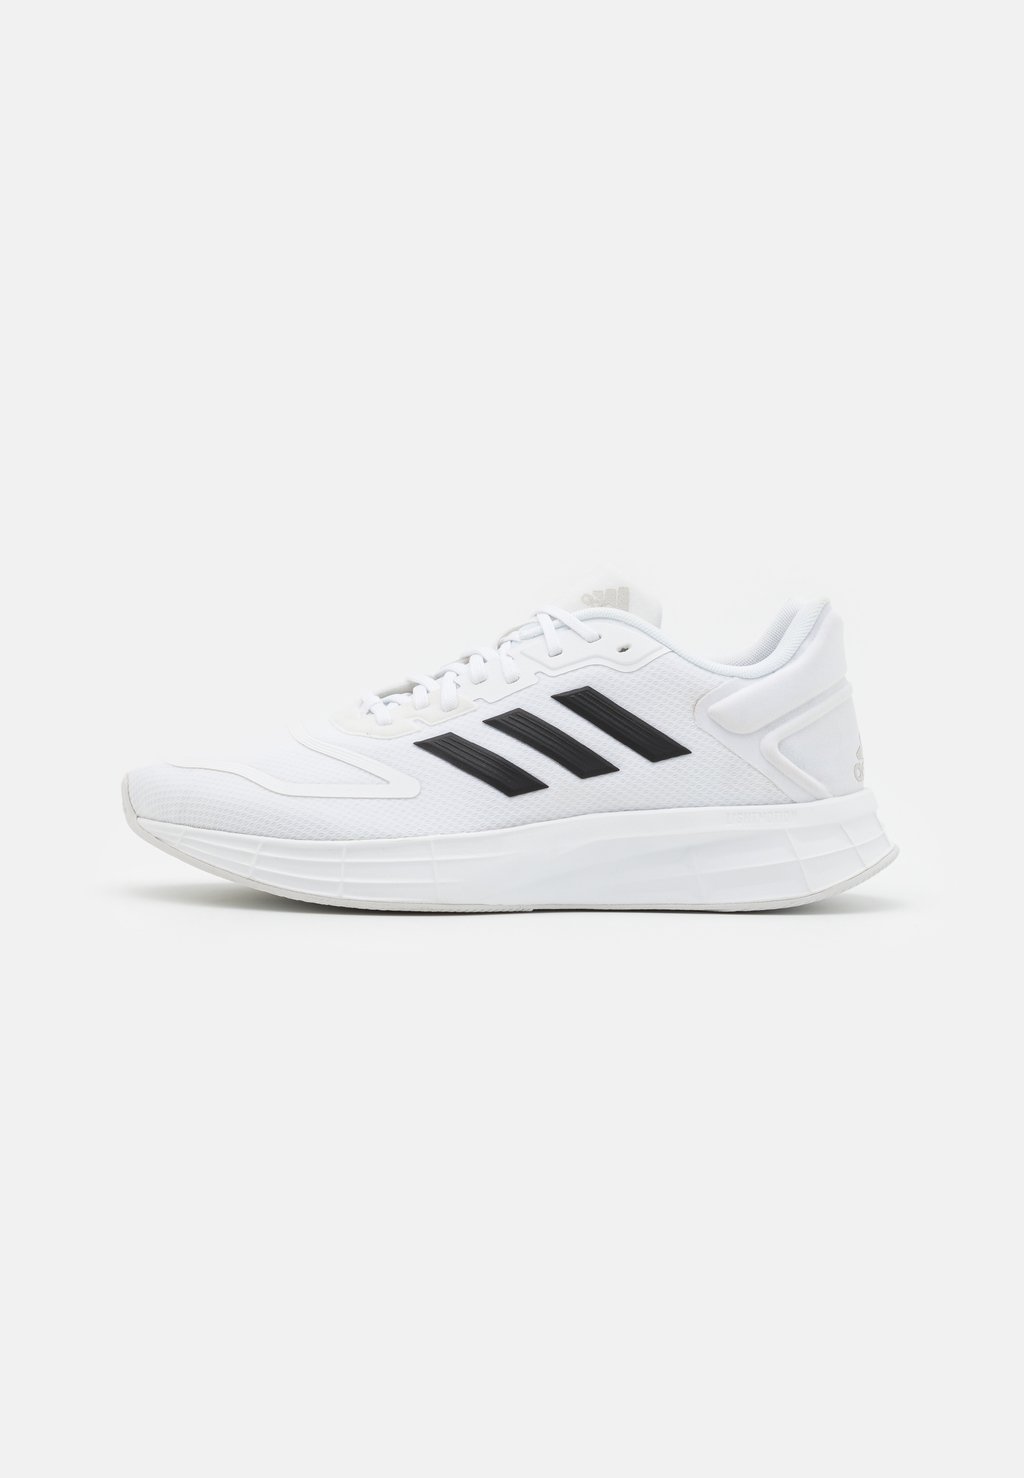 Нейтральные кроссовки Duramo 10 Adidas, цвет footwear white/core black/dash grey